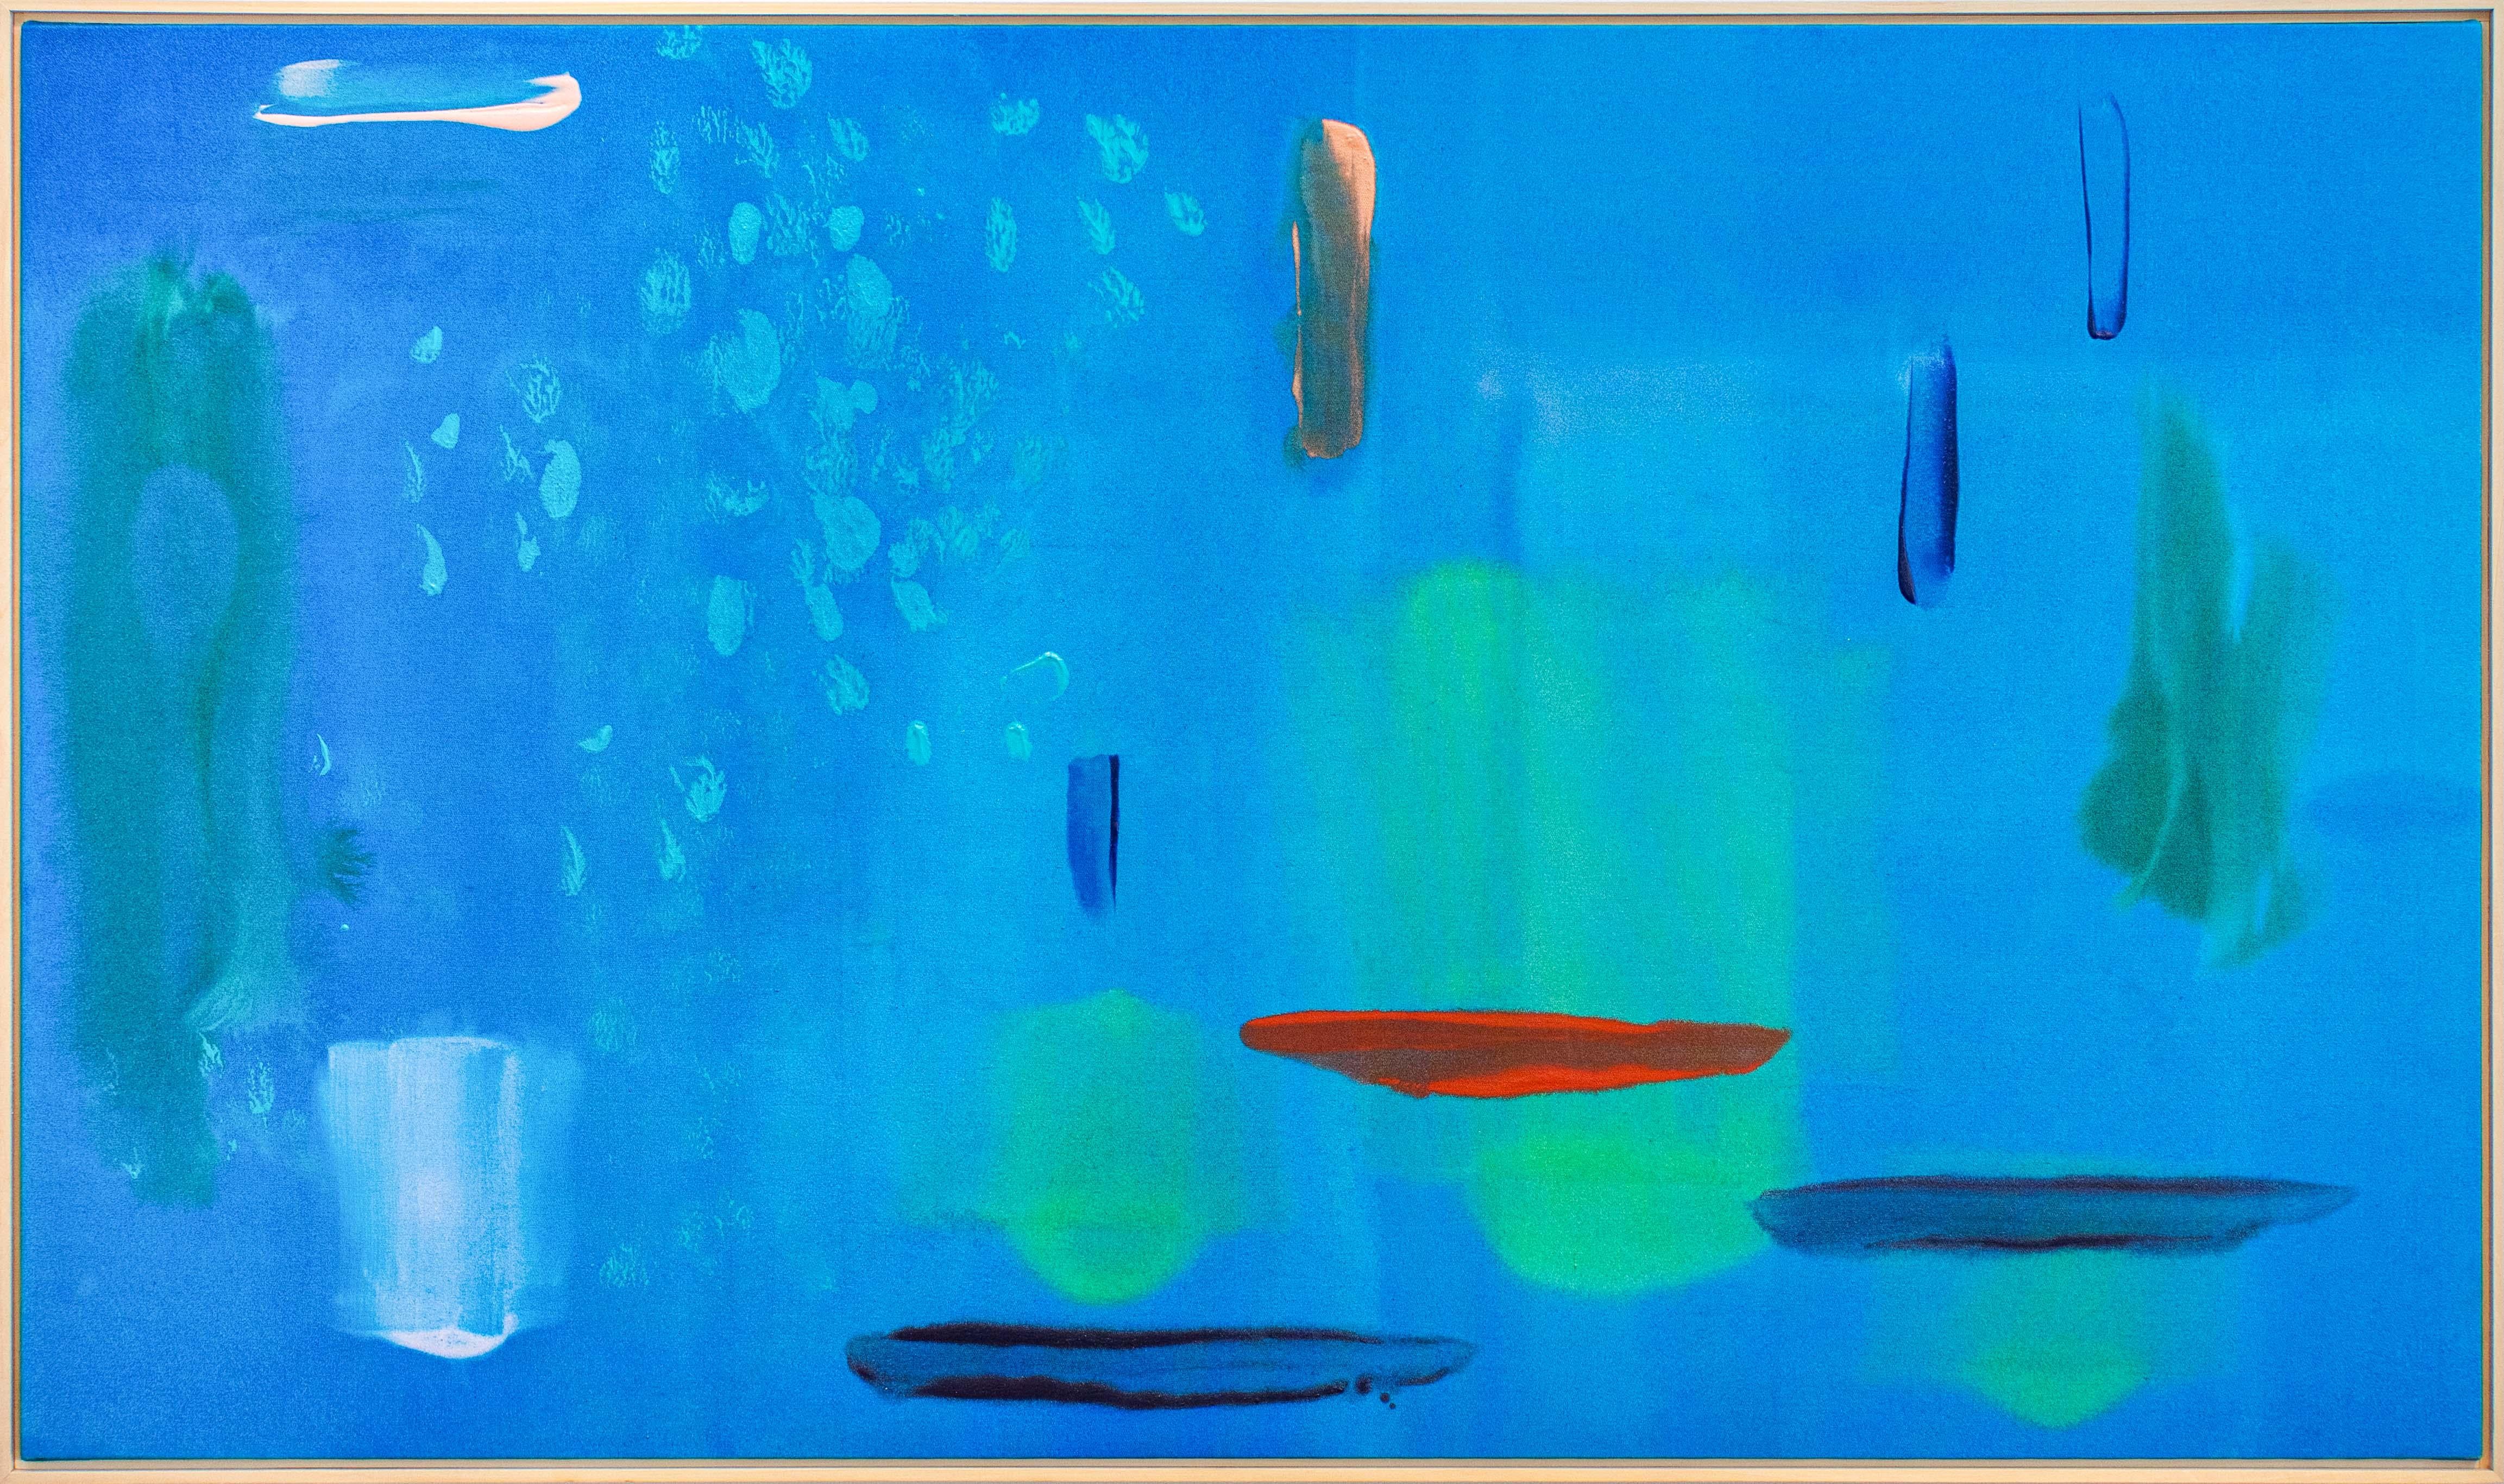 Lagon bleu, large, coloré, moderniste, abstrait gestuel, acrylique sur toile - Painting de Milly Ristvedt